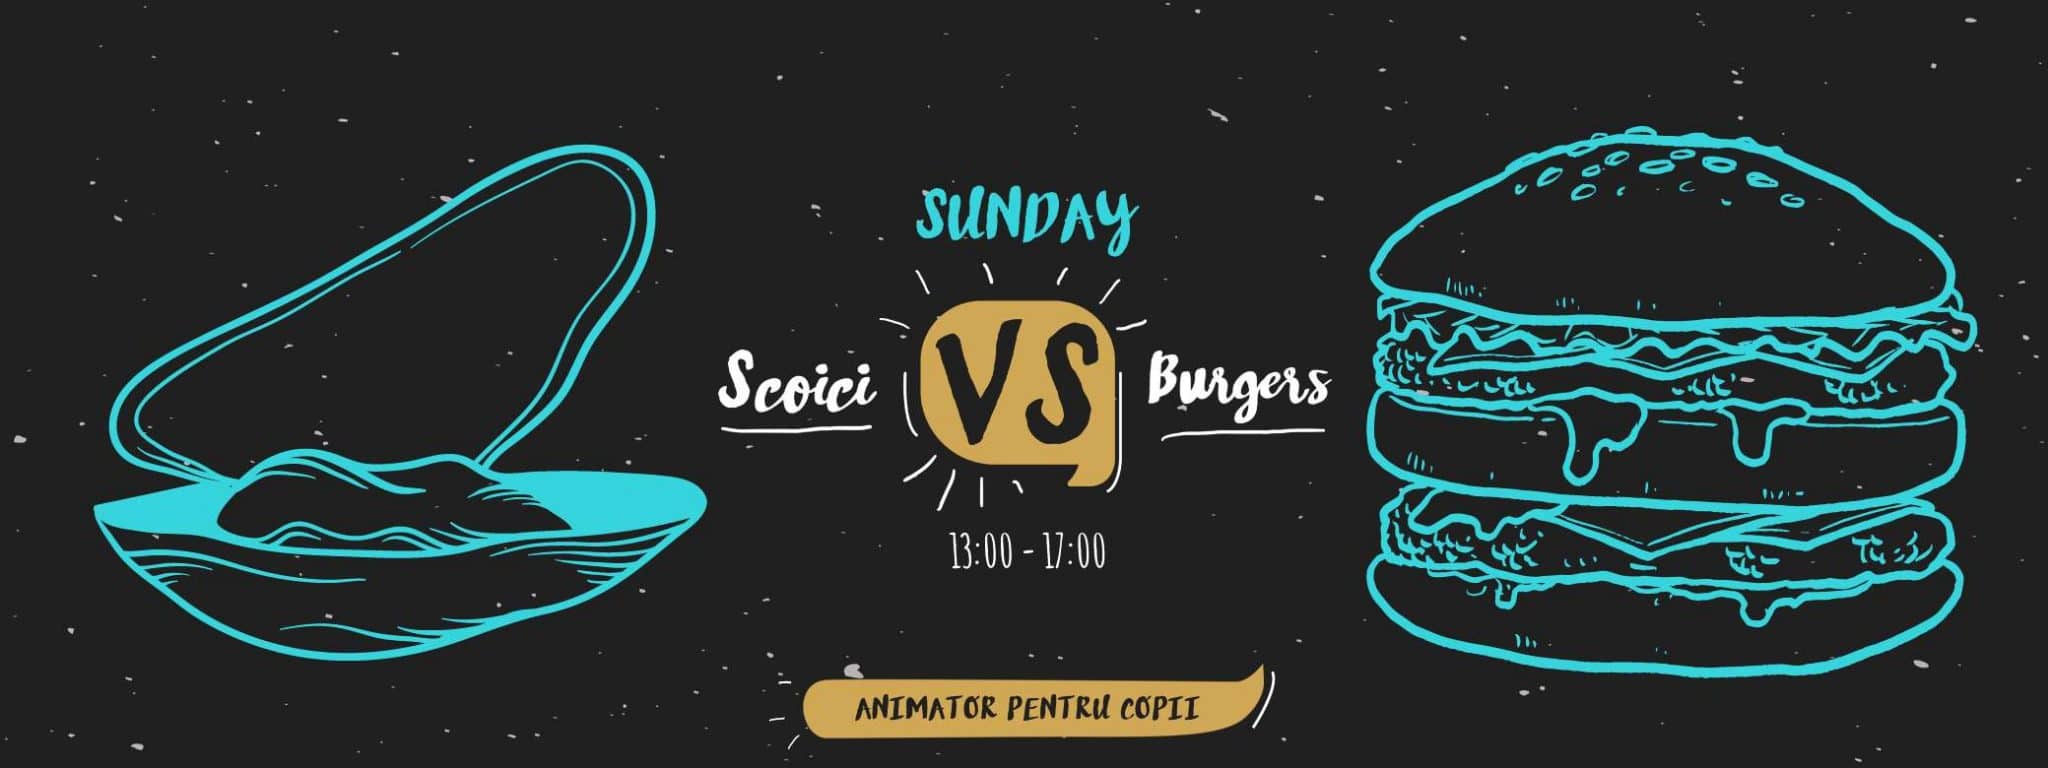 Duminica – zi de relaxare si rasfat la Sunday Scoici vs Burgers